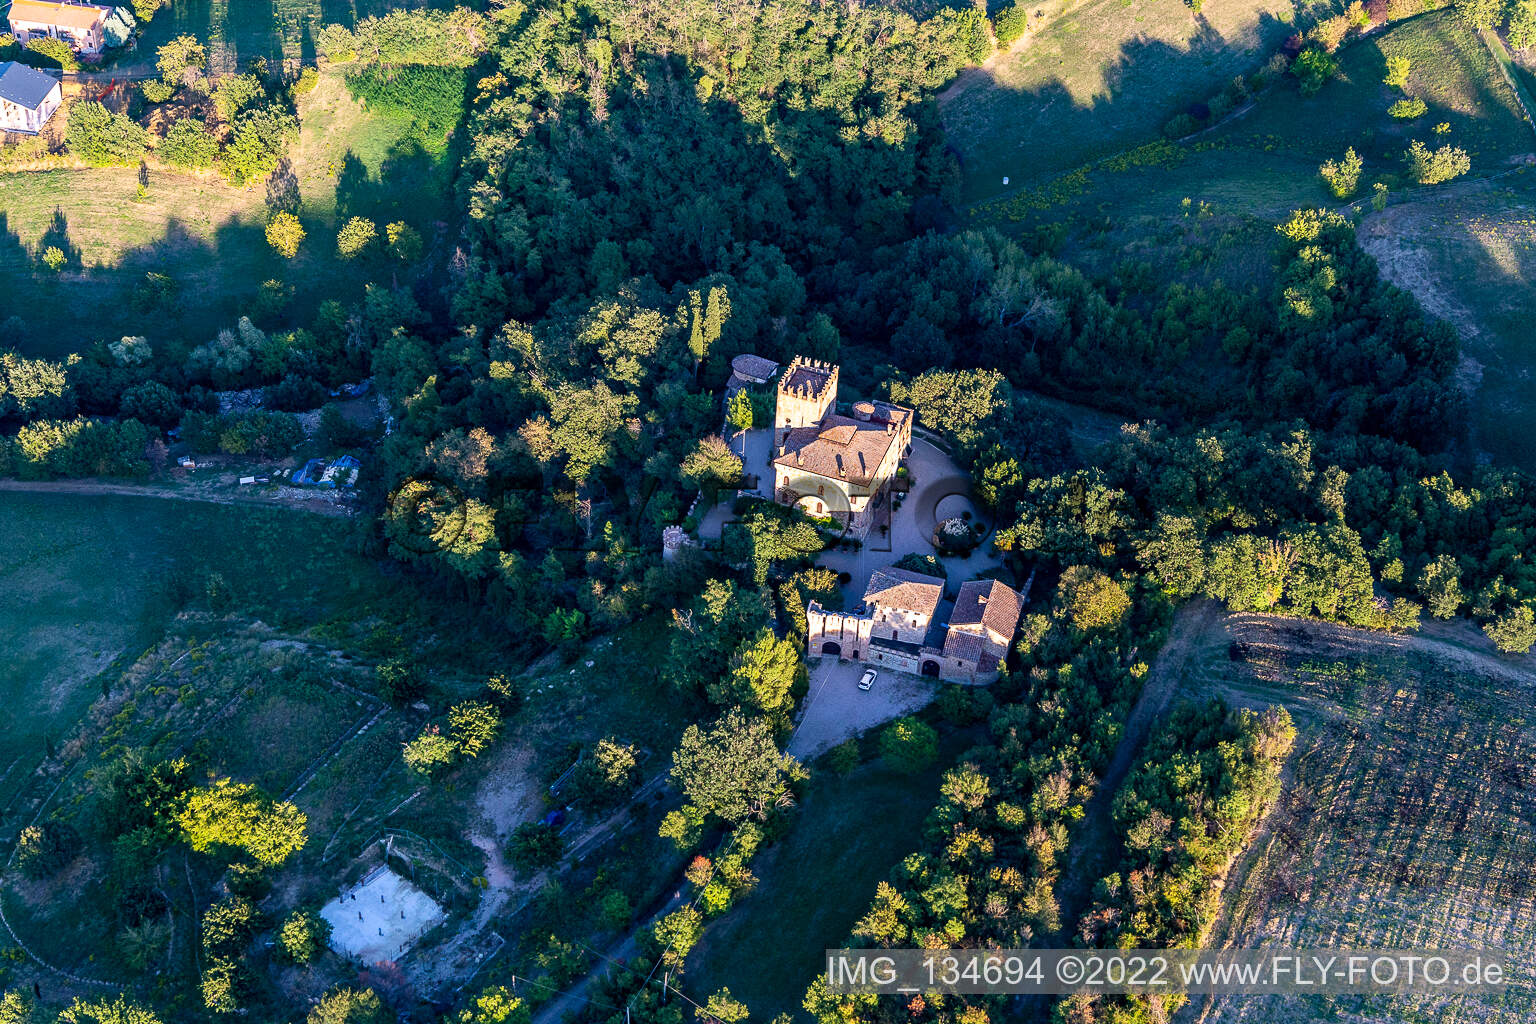 Castello della Torricella in Scandiano im Bundesland Reggio Emilia, Italien aus der Luft betrachtet